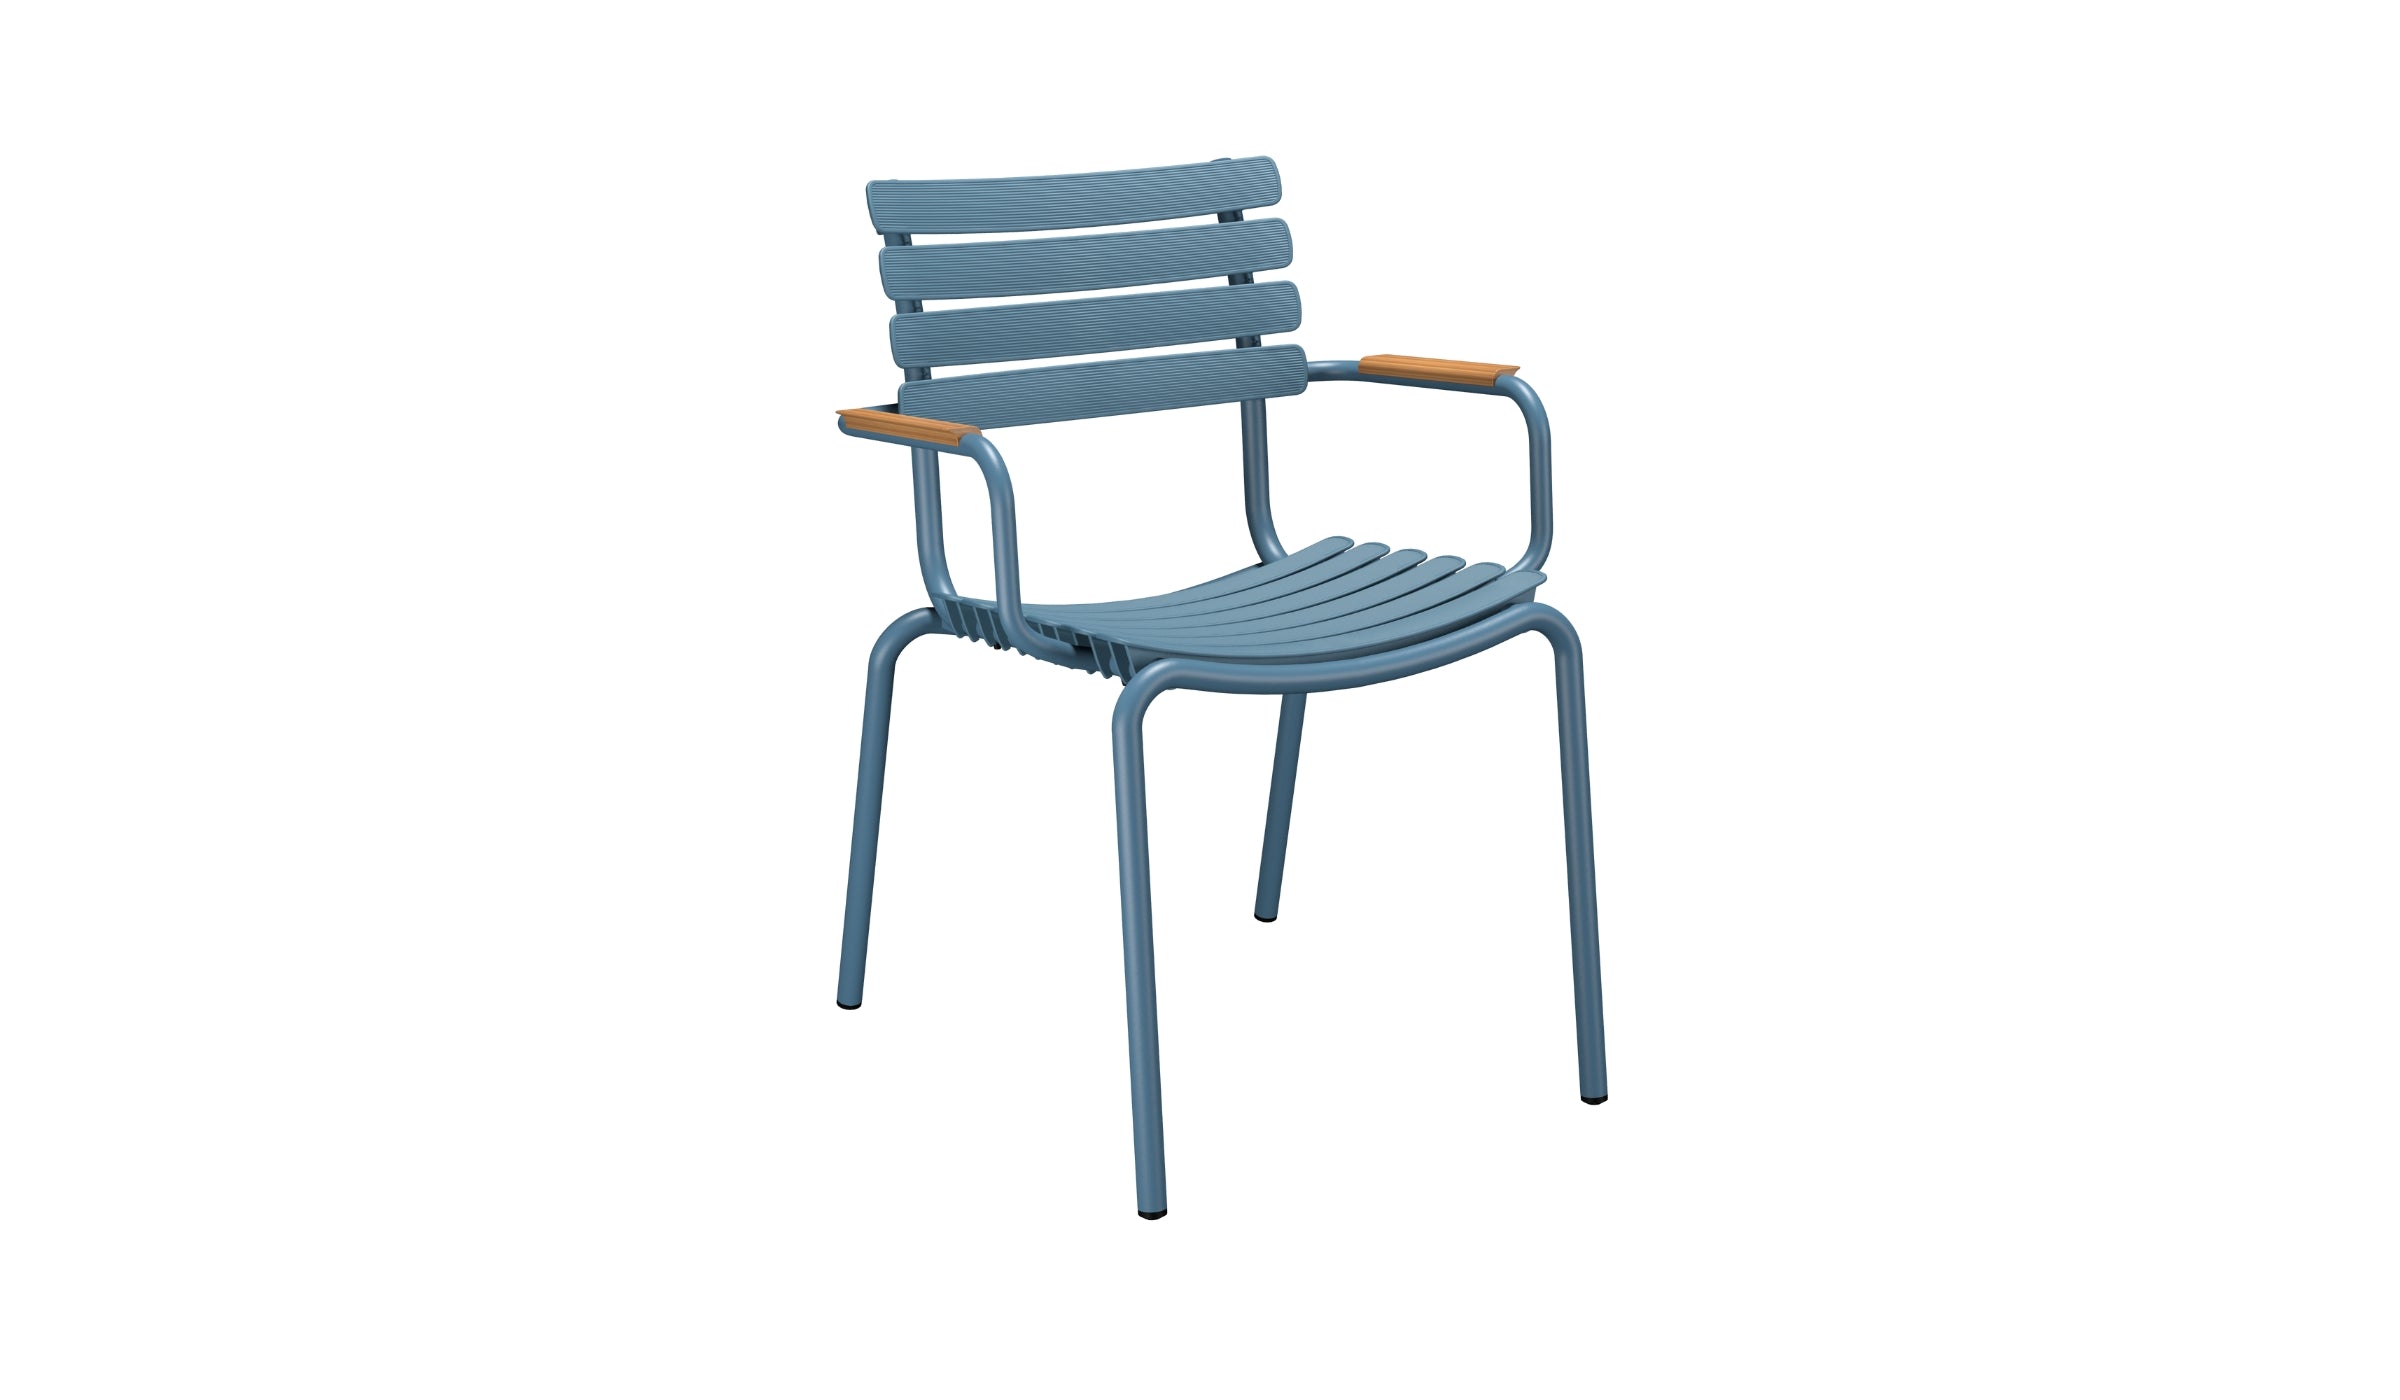 Reclips - Chaise d'extérieur en aluminium et plastique recyclé avec accoudoirs en bambou, bleu